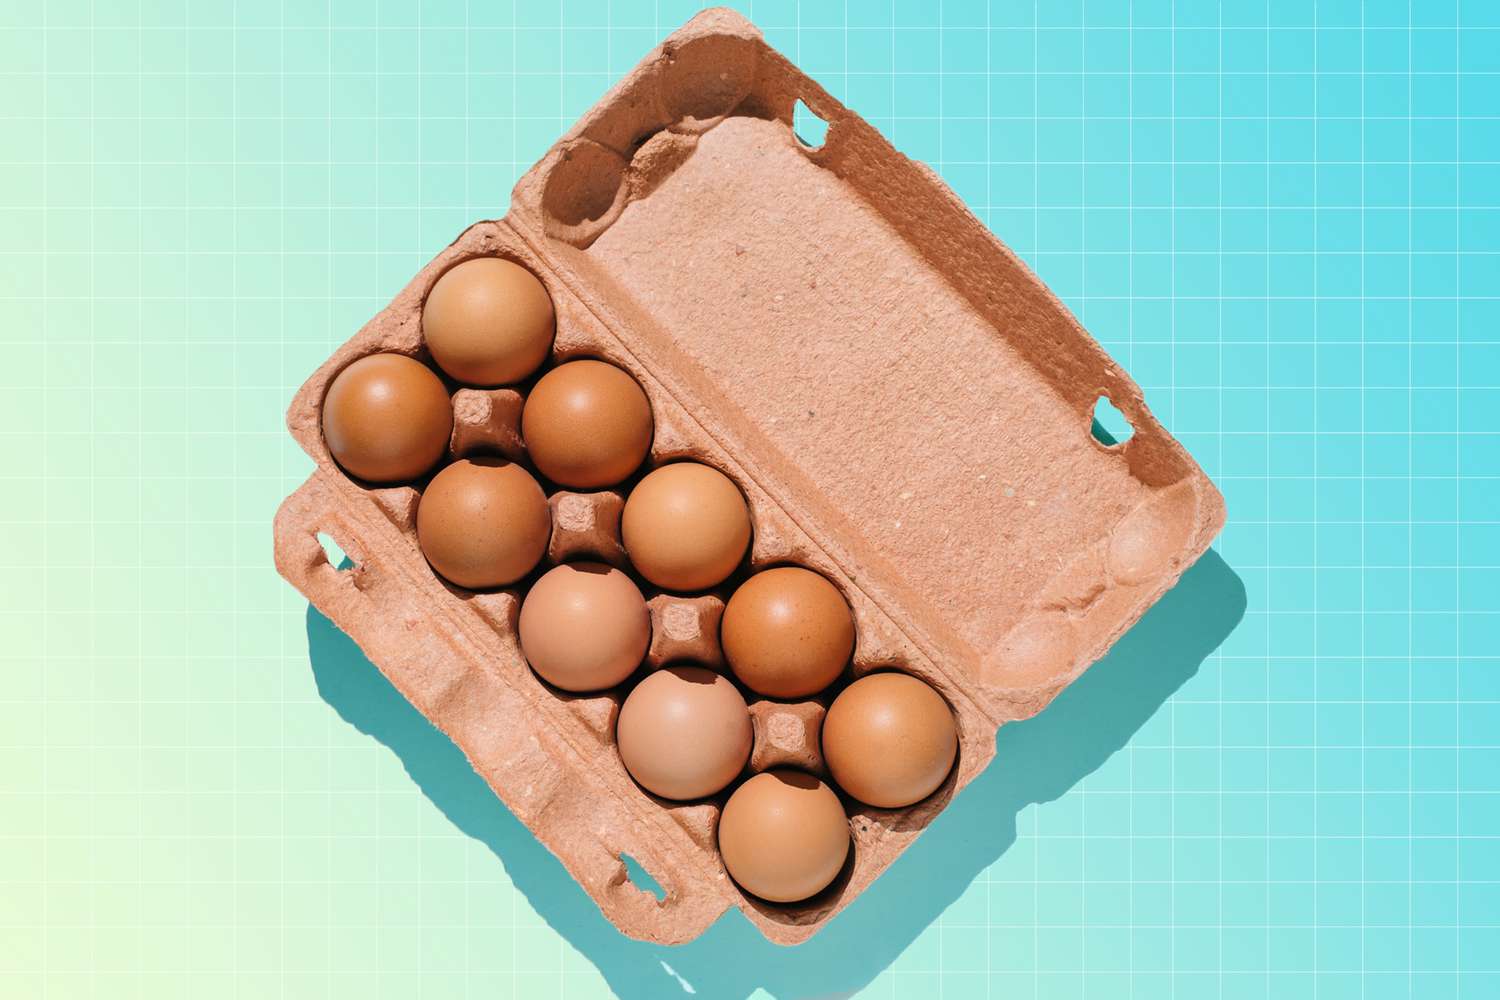 a photo of eggs in a carton